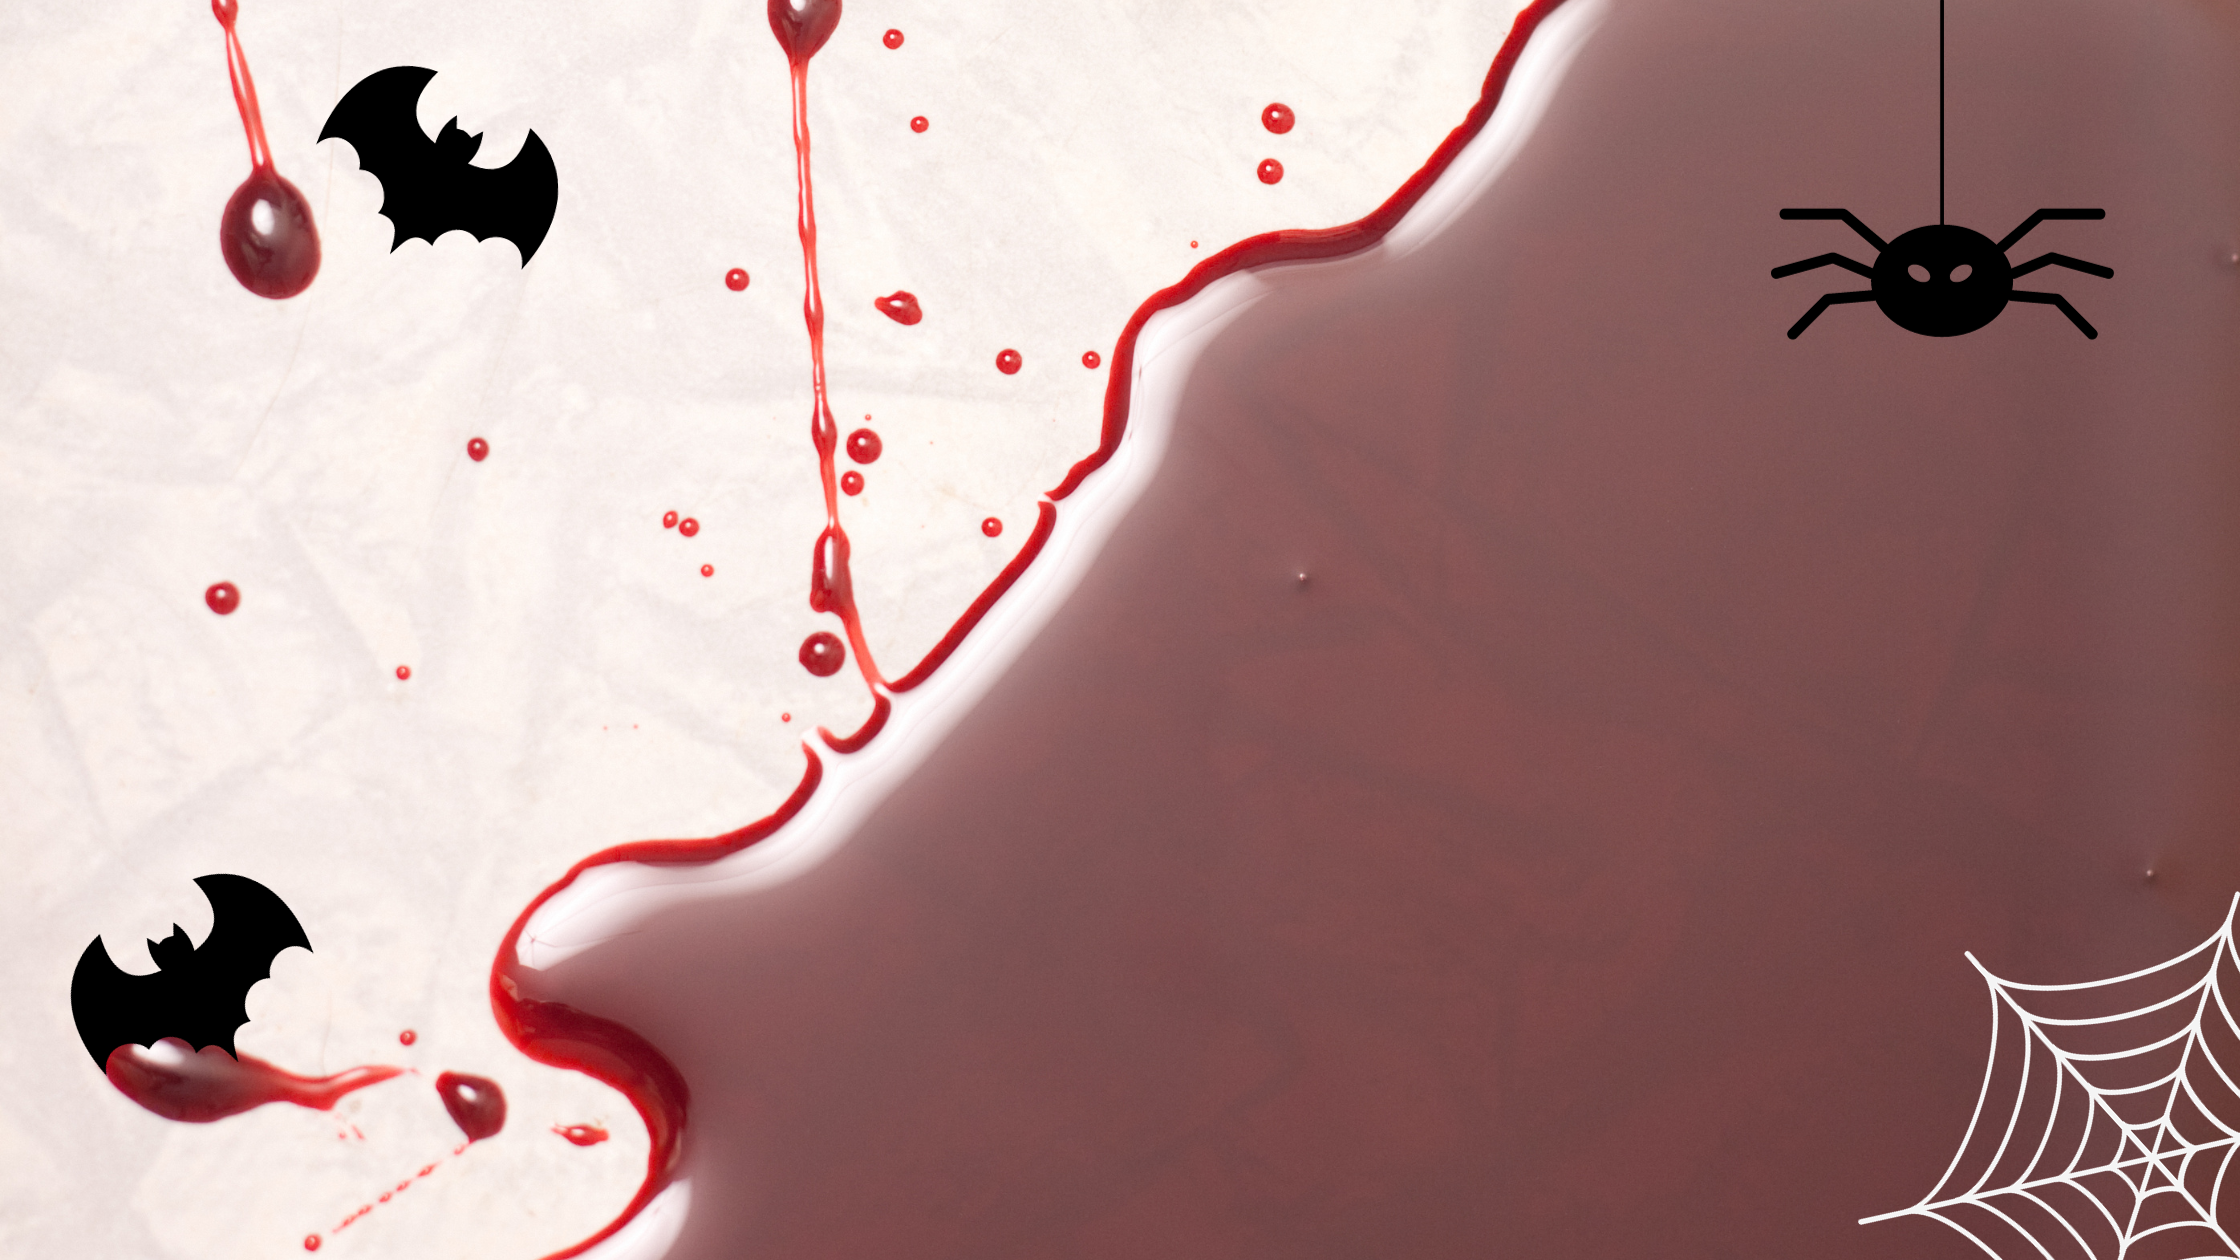 Halloween creepy food ideas: Blood. Image is of a blood pool on the floor